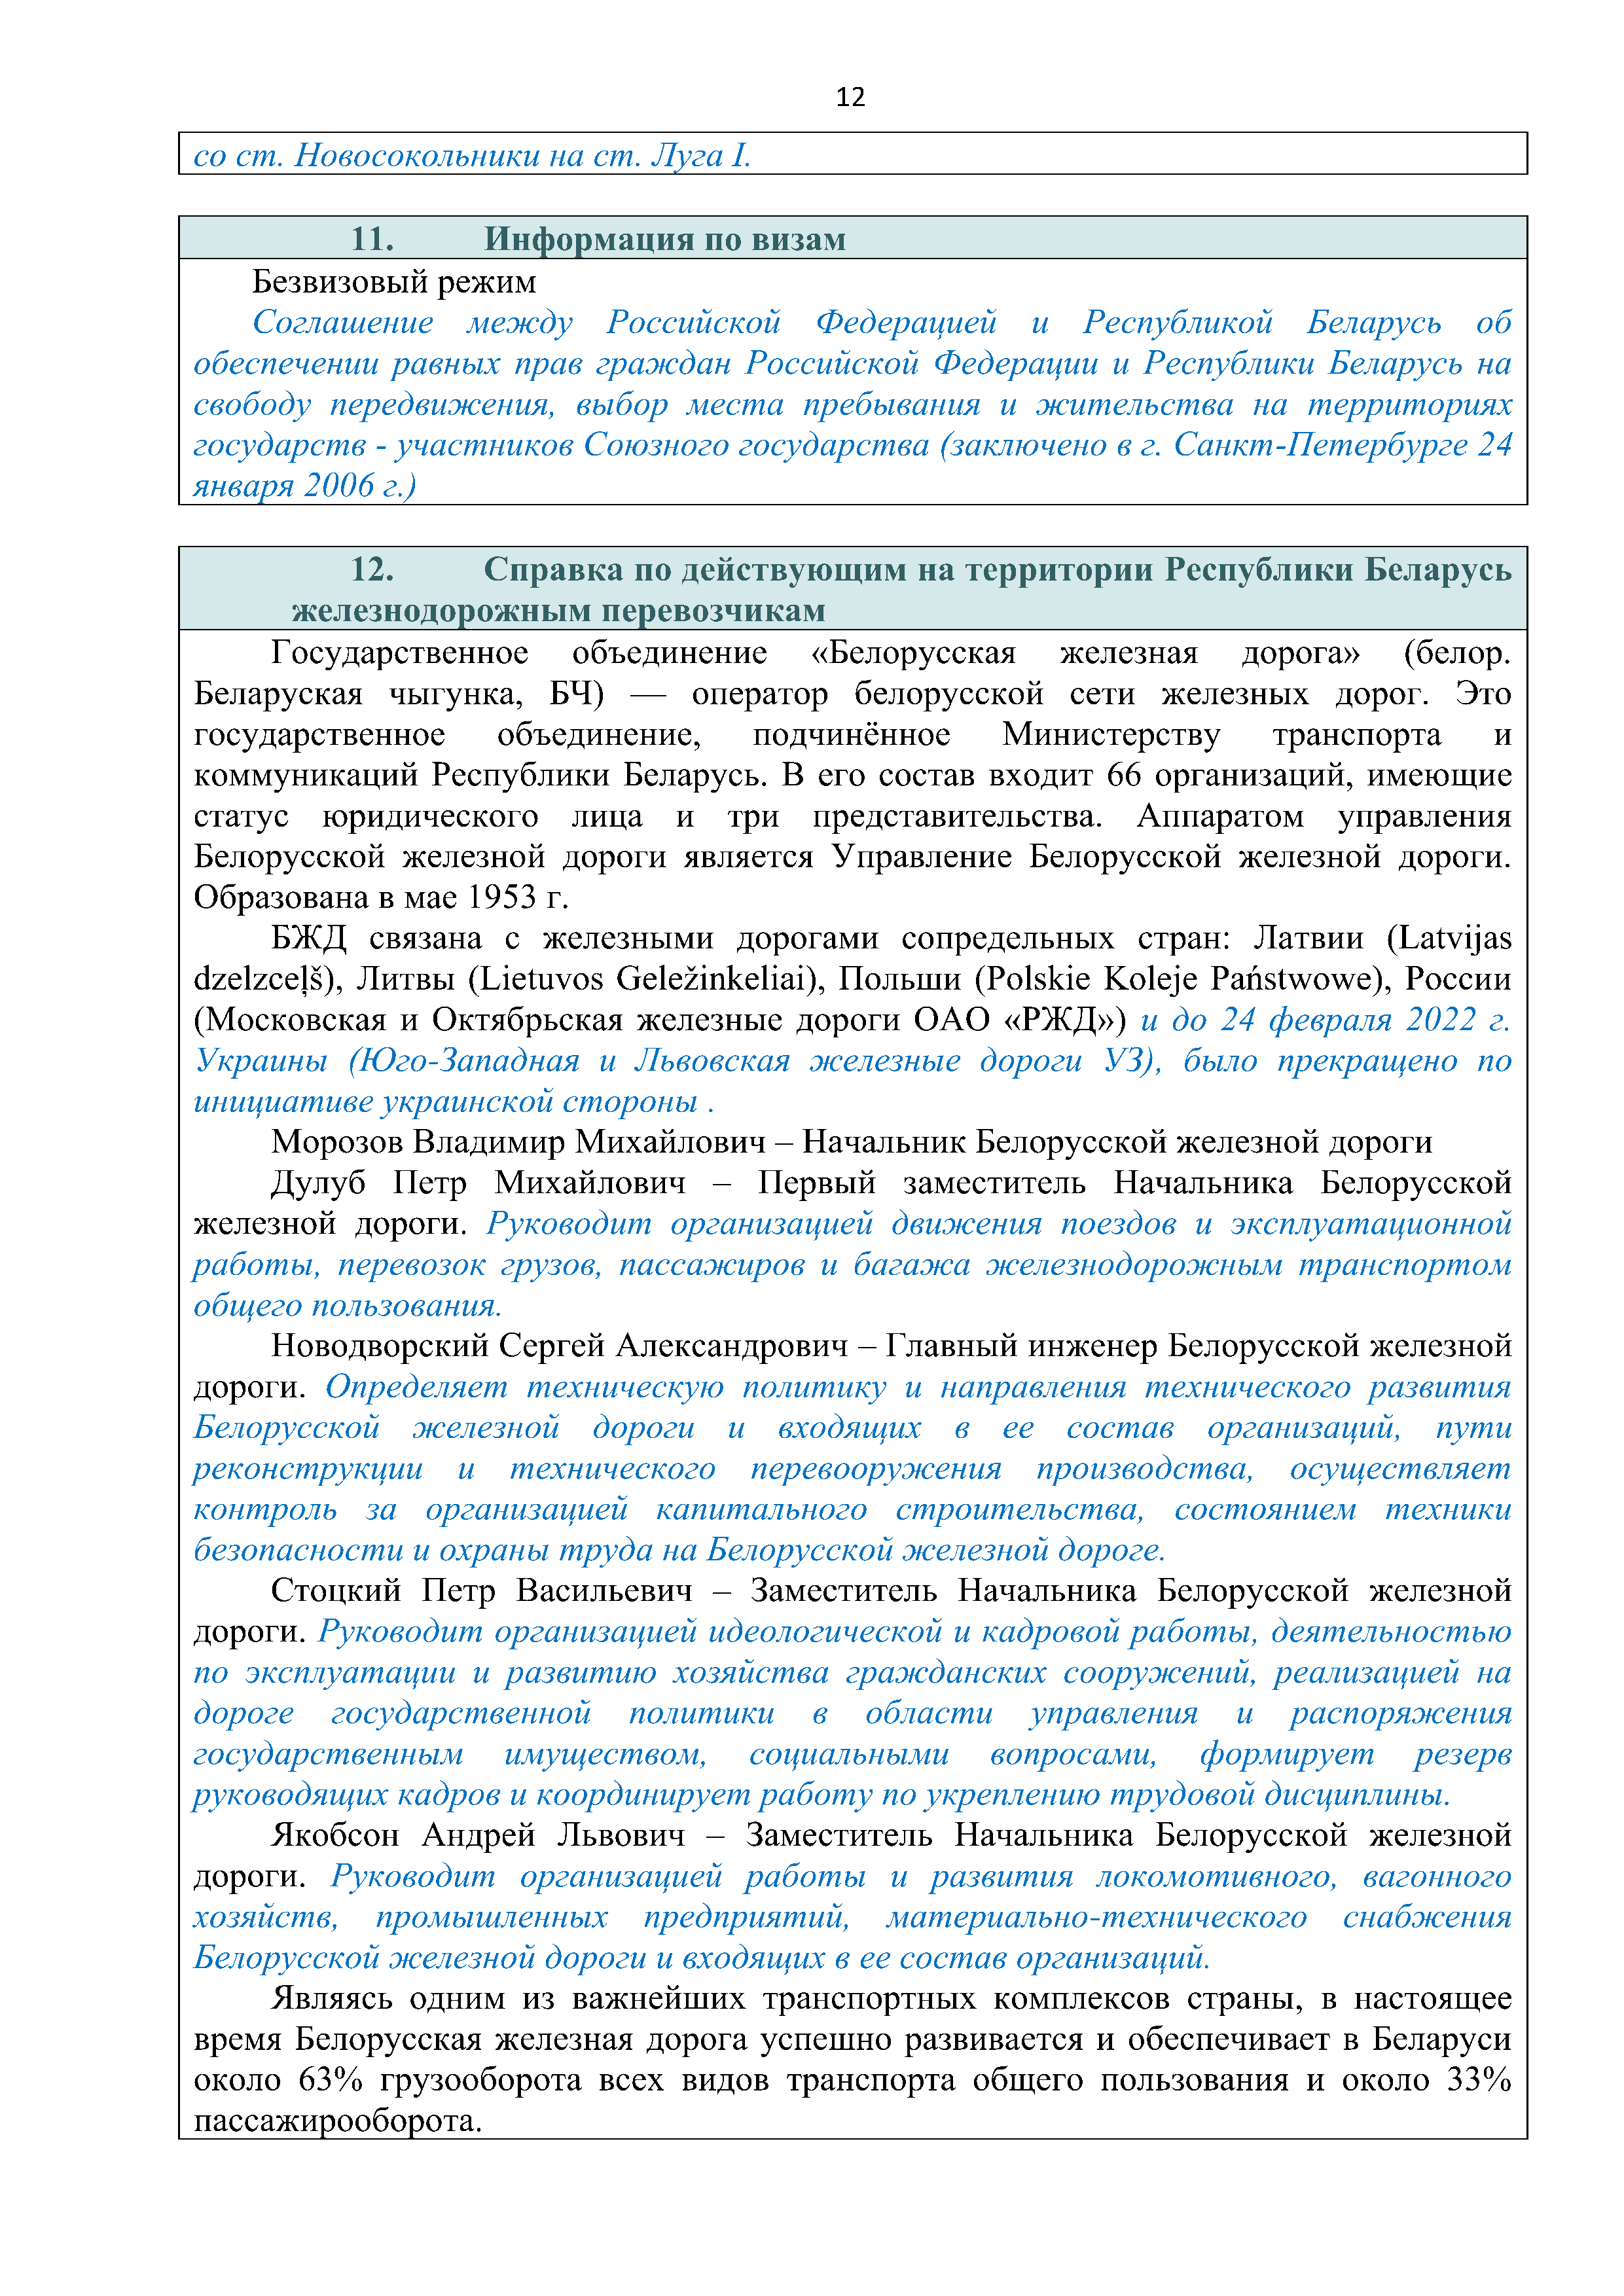 Справочная информация о взаимодействии ОАО «РЖД» с Республикой Беларусь (Страница 12)